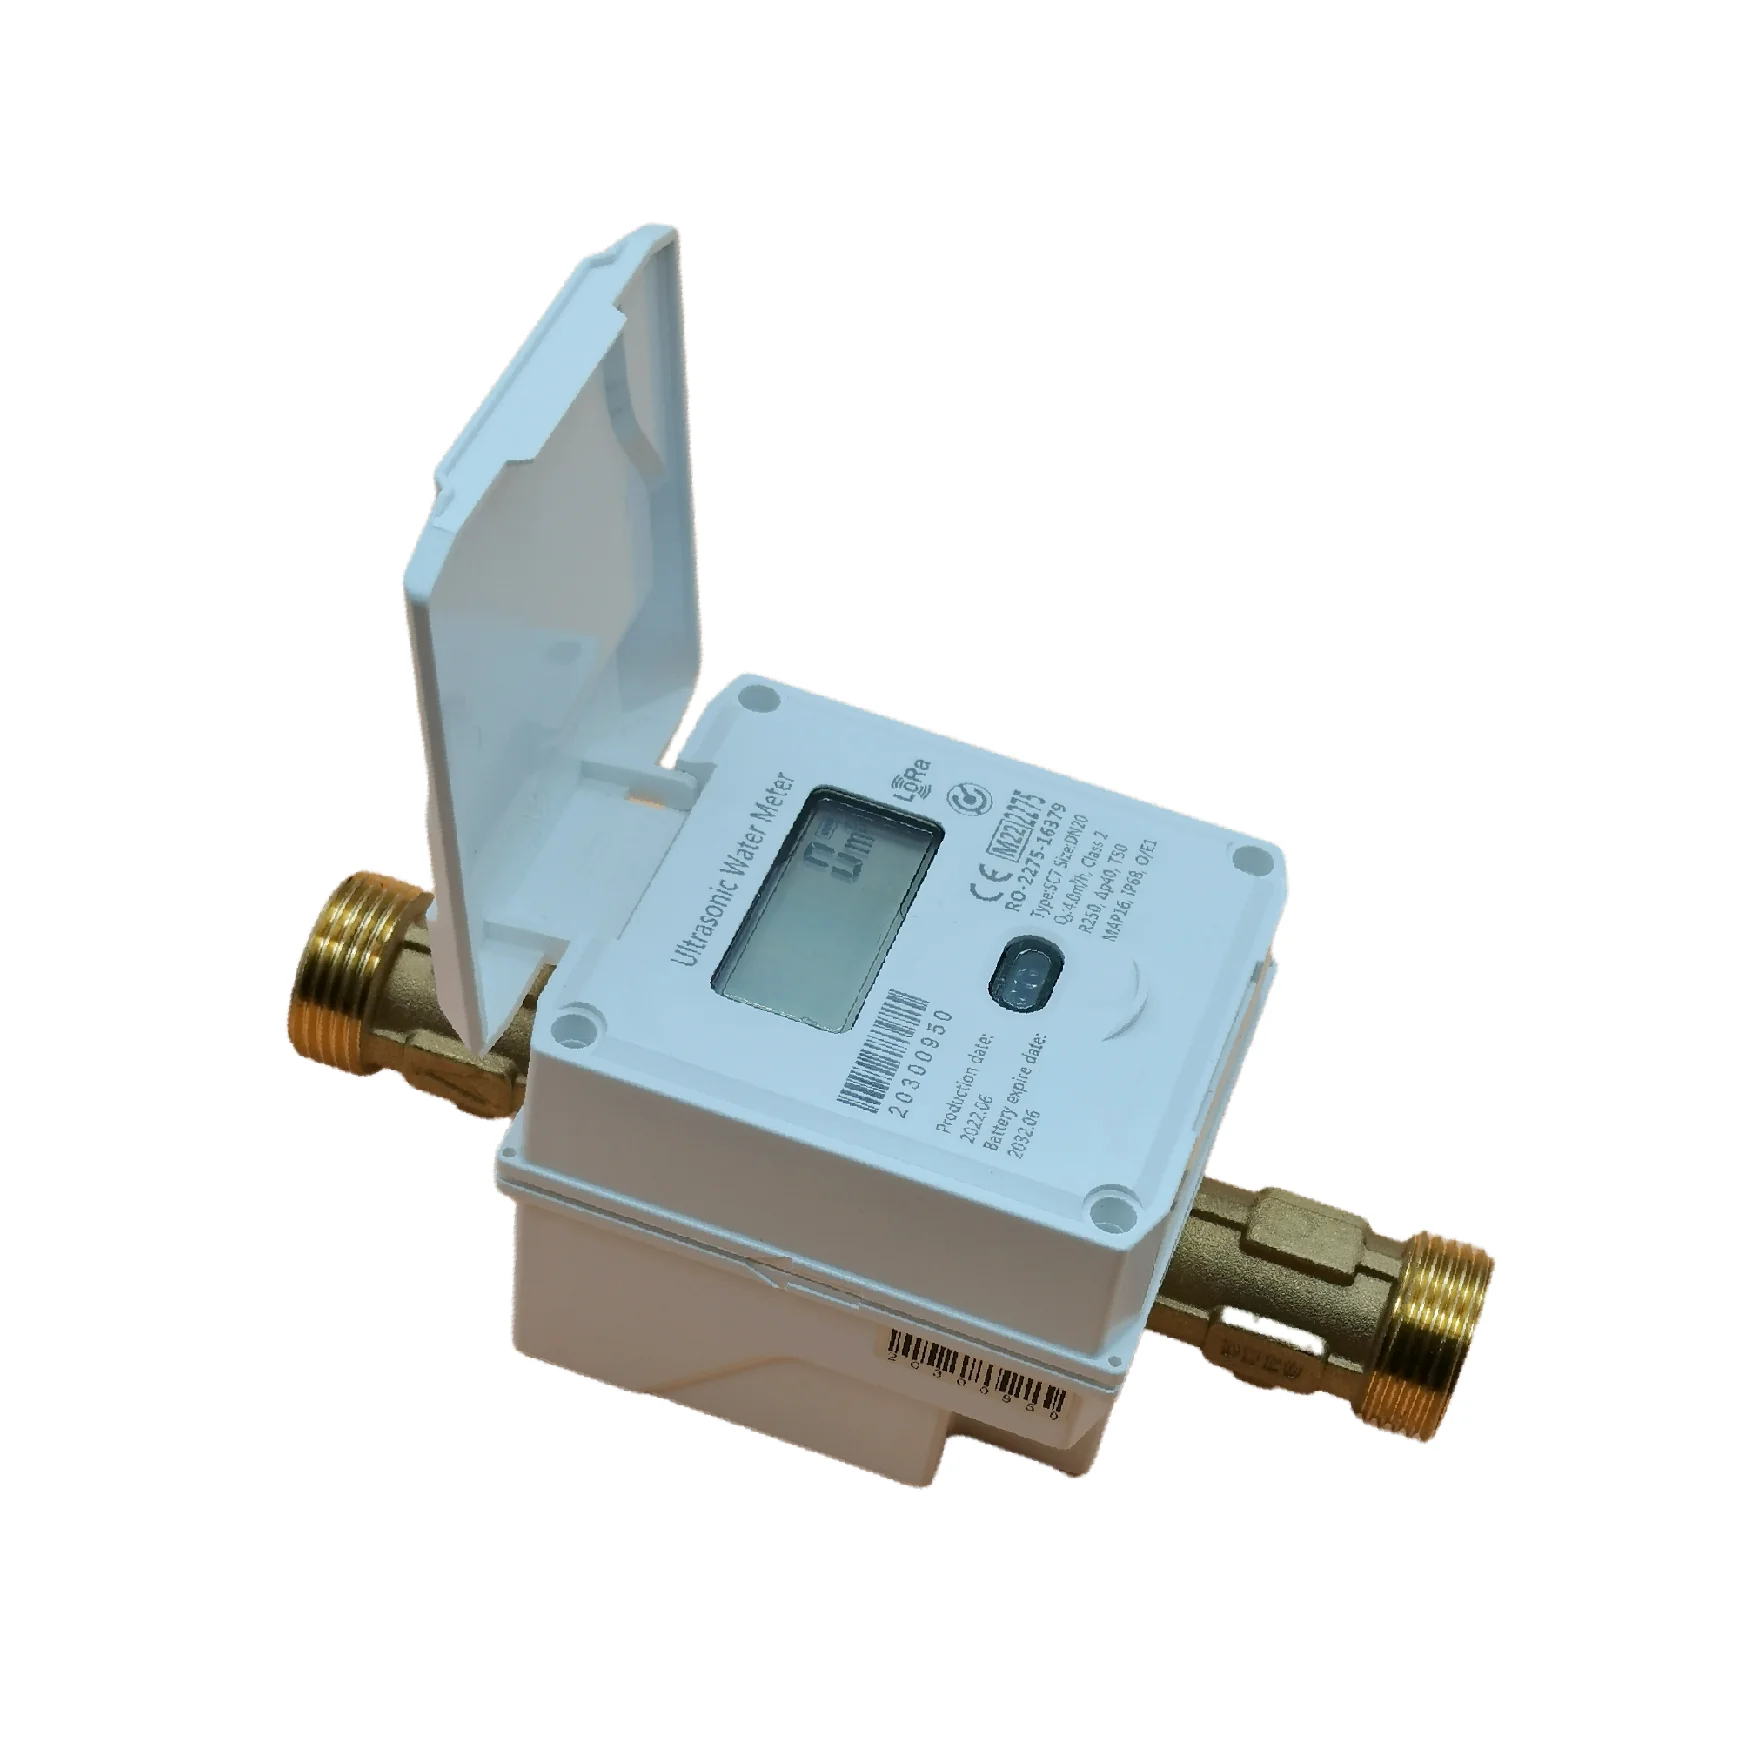 

NB-IoT /LoRa/LoRaWAN беспроводной счетчик, ультразвуковой умный счетчик воды